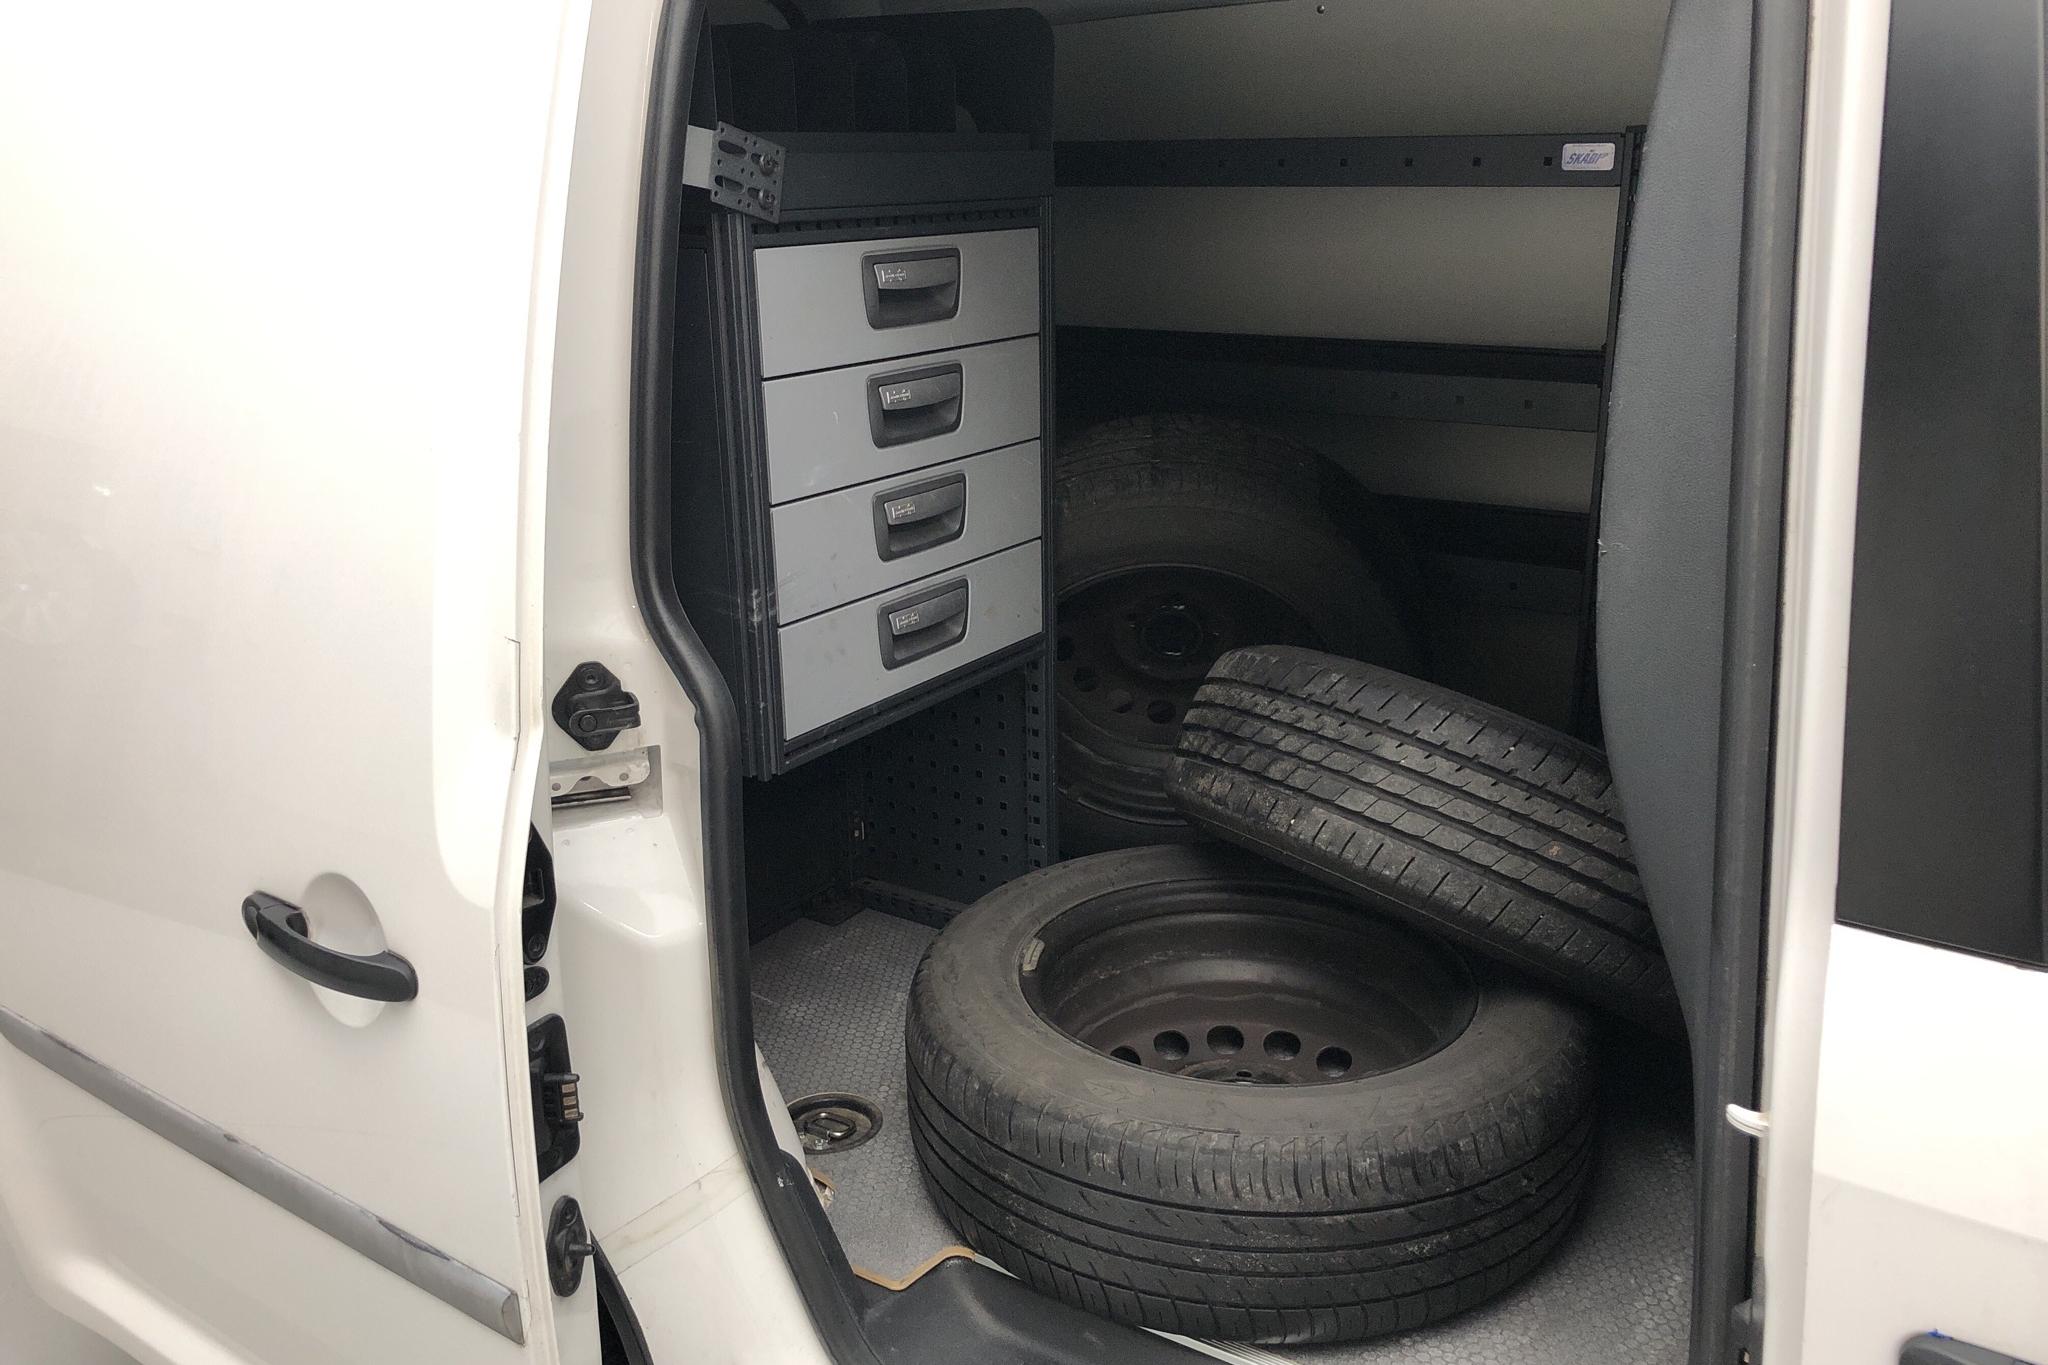 VW Caddy 2.0 TDI Skåp (75hk) - 17 764 mil - Manuell - vit - 2017